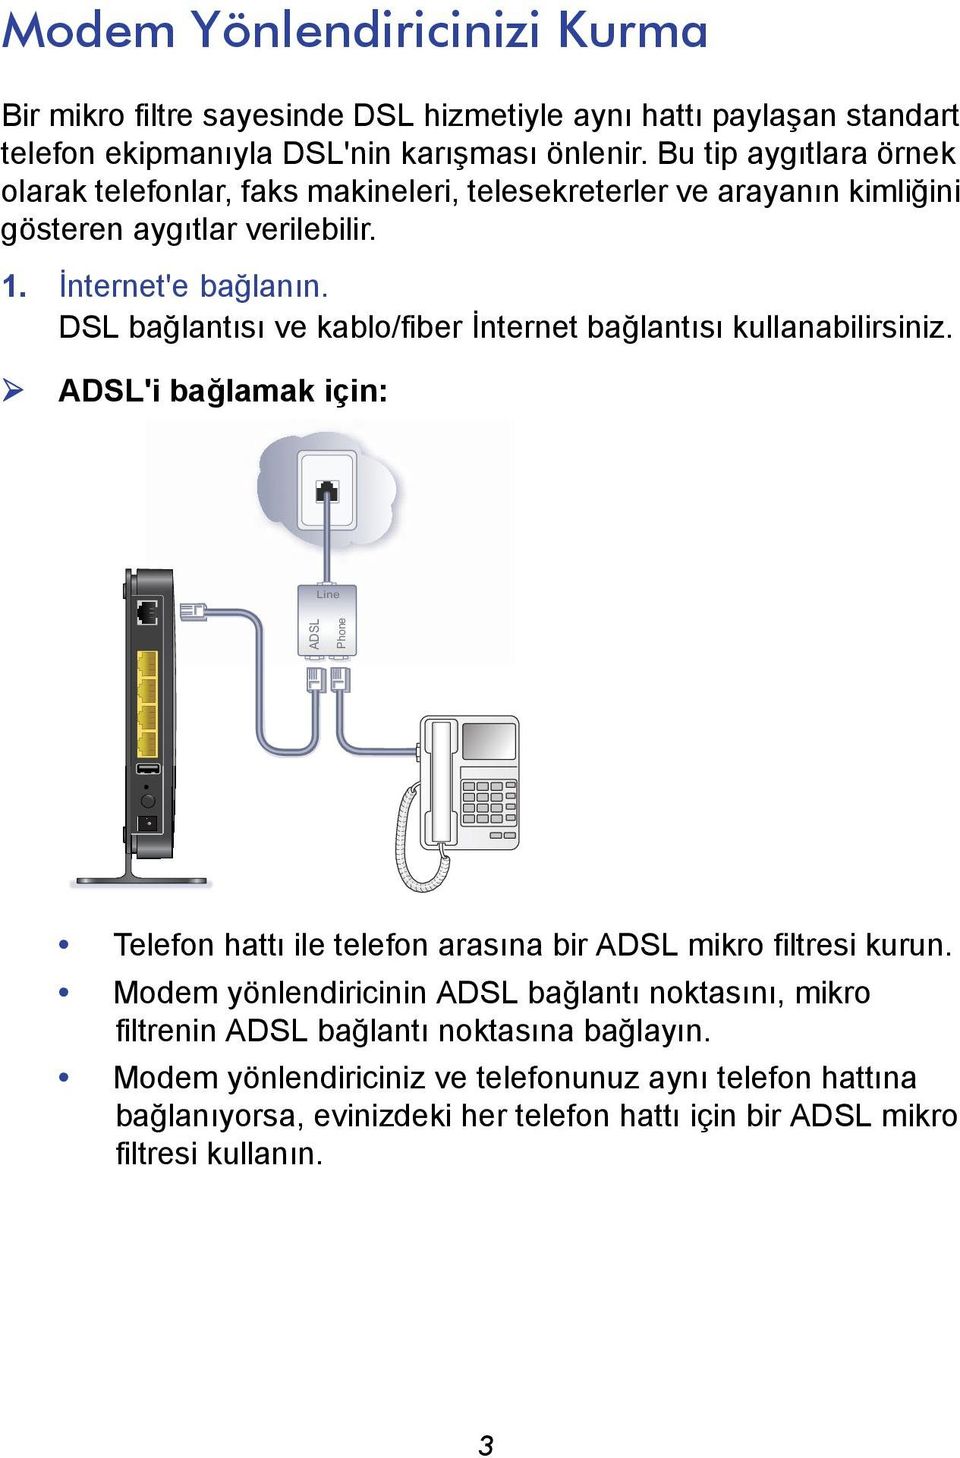 DSL bağlantısı ve kablo/fiber İnternet bağlantısı kullanabilirsiniz. ADSL'i bağlamak için: Line ADSL Phone Telefon hattı ile telefon arasına bir ADSL mikro filtresi kurun.